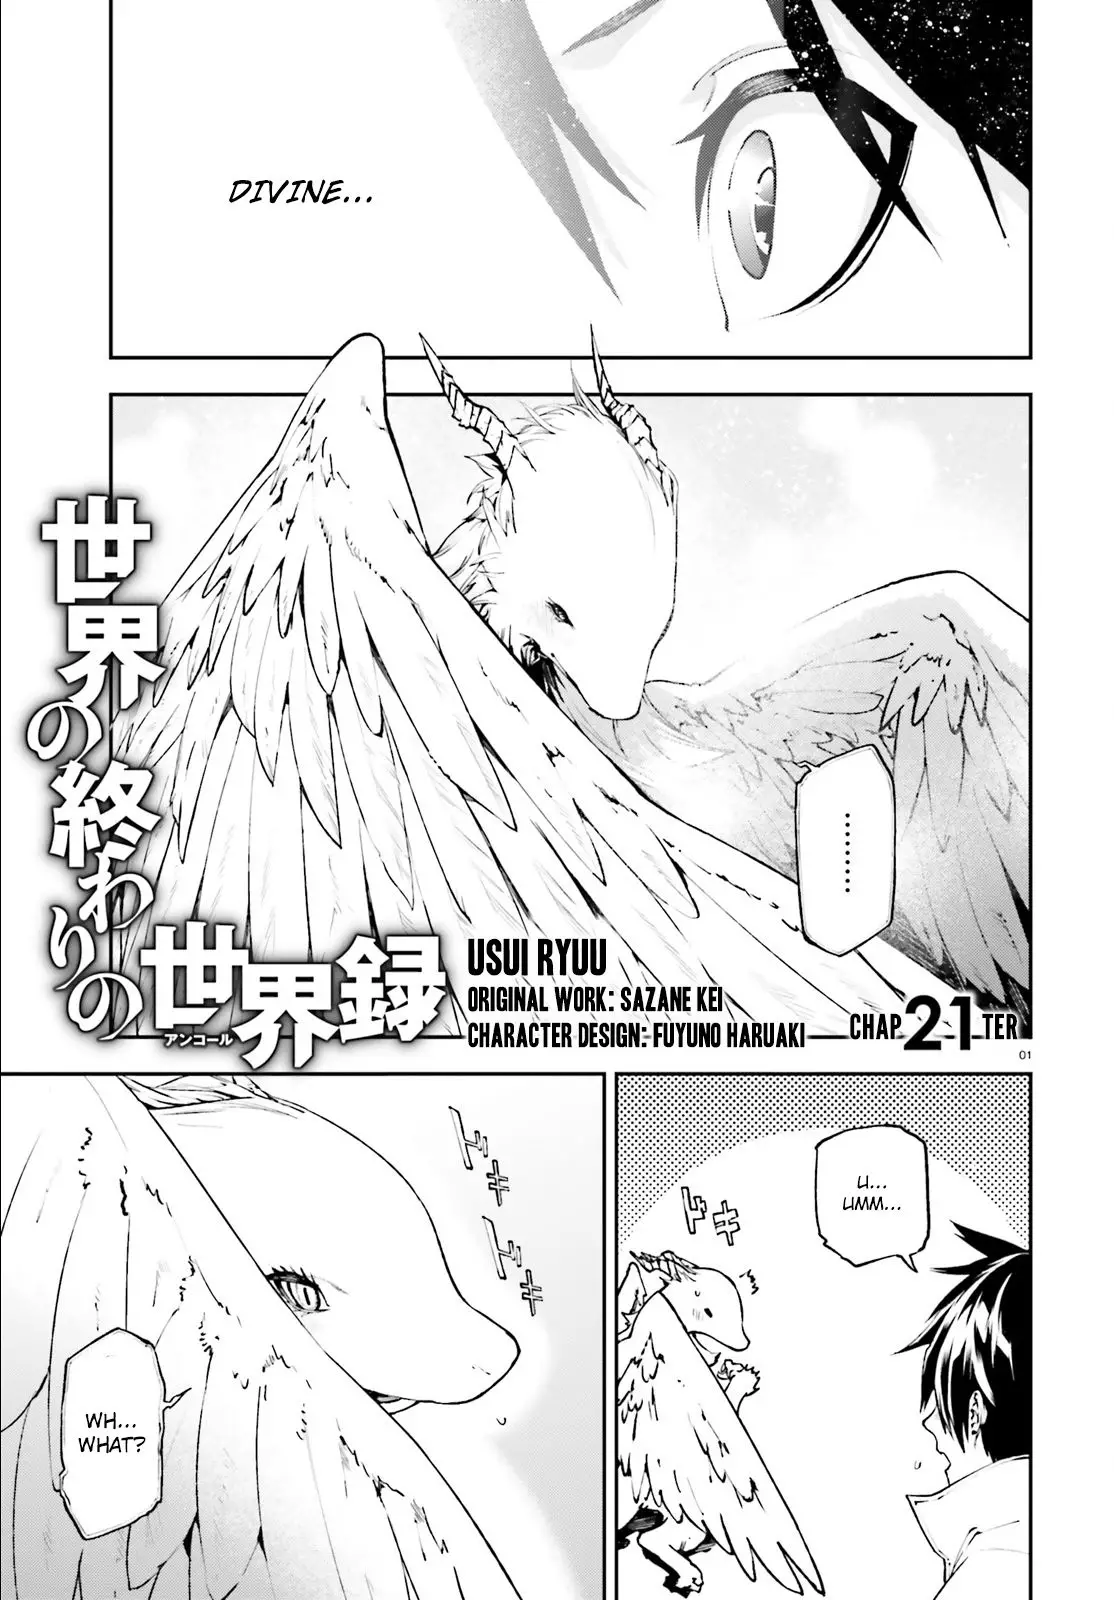 Sekai No Owari No Encore - 21 page 2